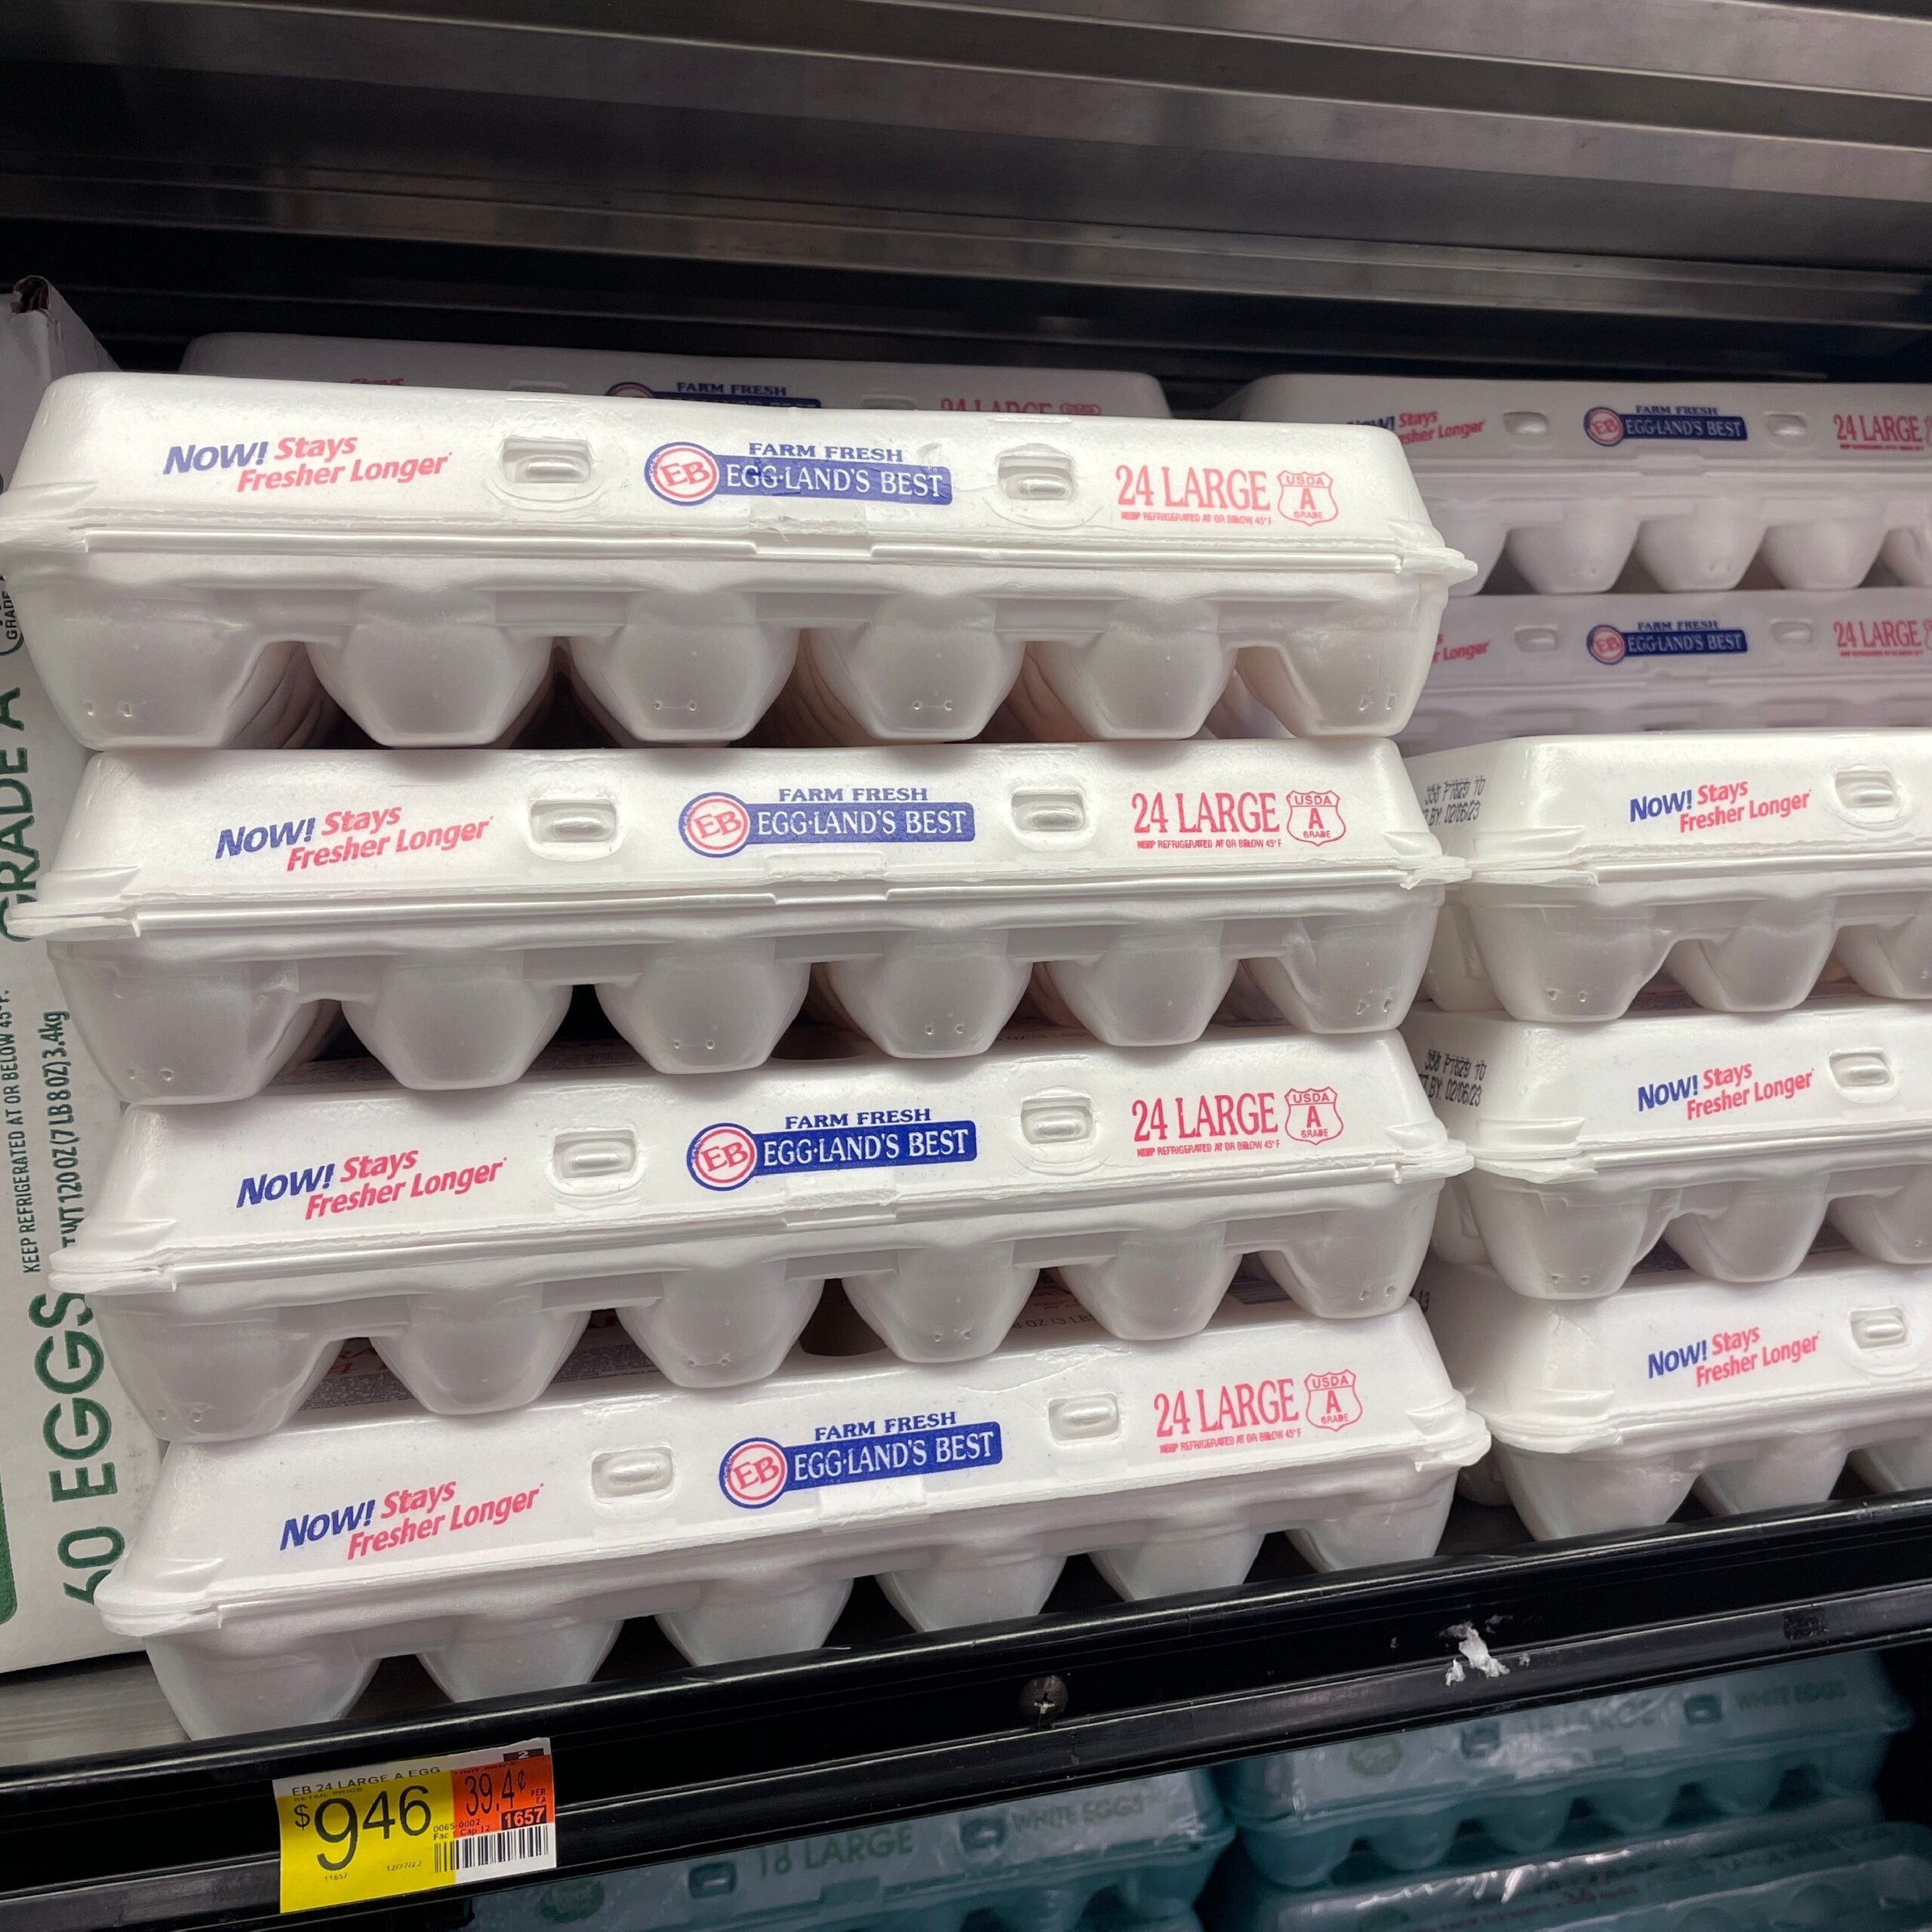 egglands best eggs on walmart shelves